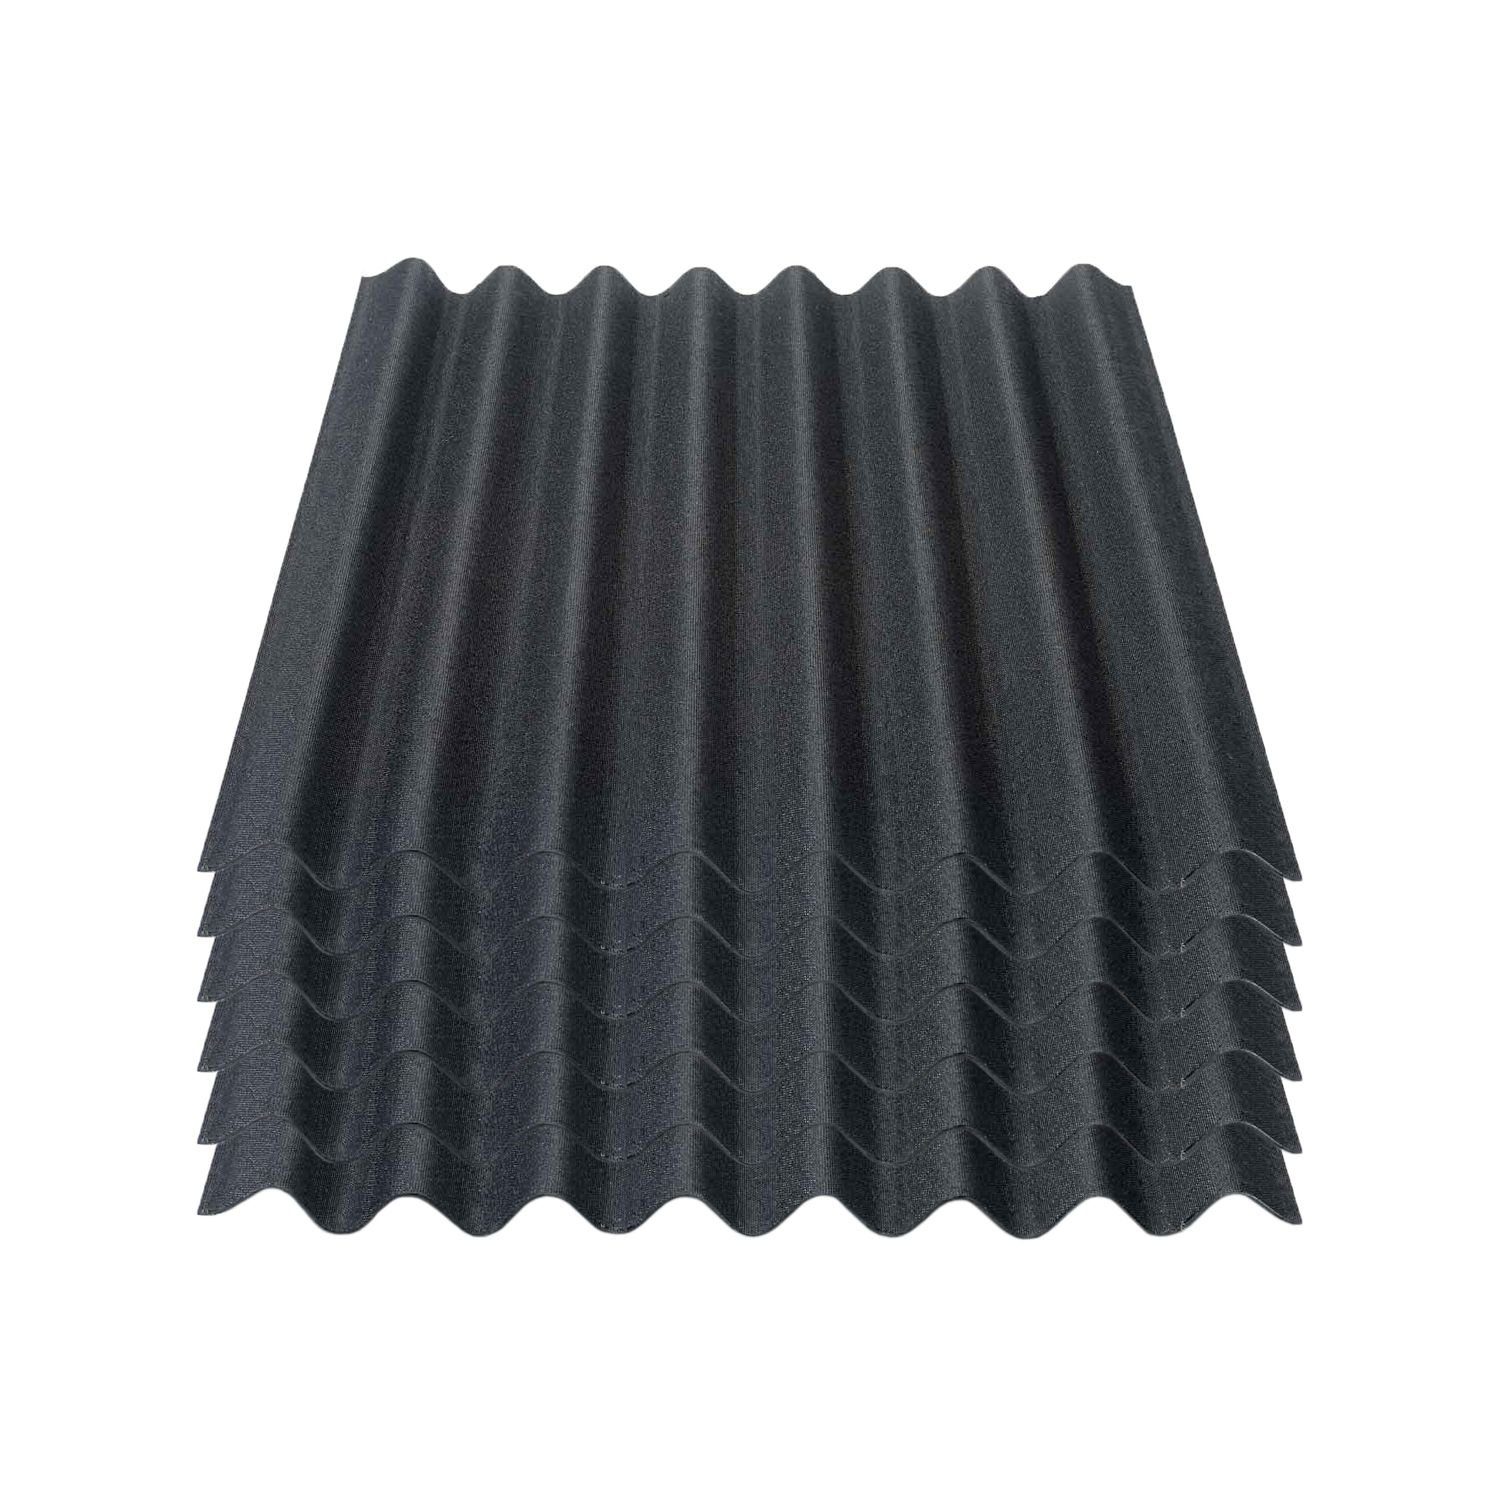 Onduline Dachpappe Onduline Easyline Dachplatte Wandplatte Bitumenwellplatten Wellplatte 6x0,76m² - schwarz, wellig, 4.56 m² pro Paket, (6-St)